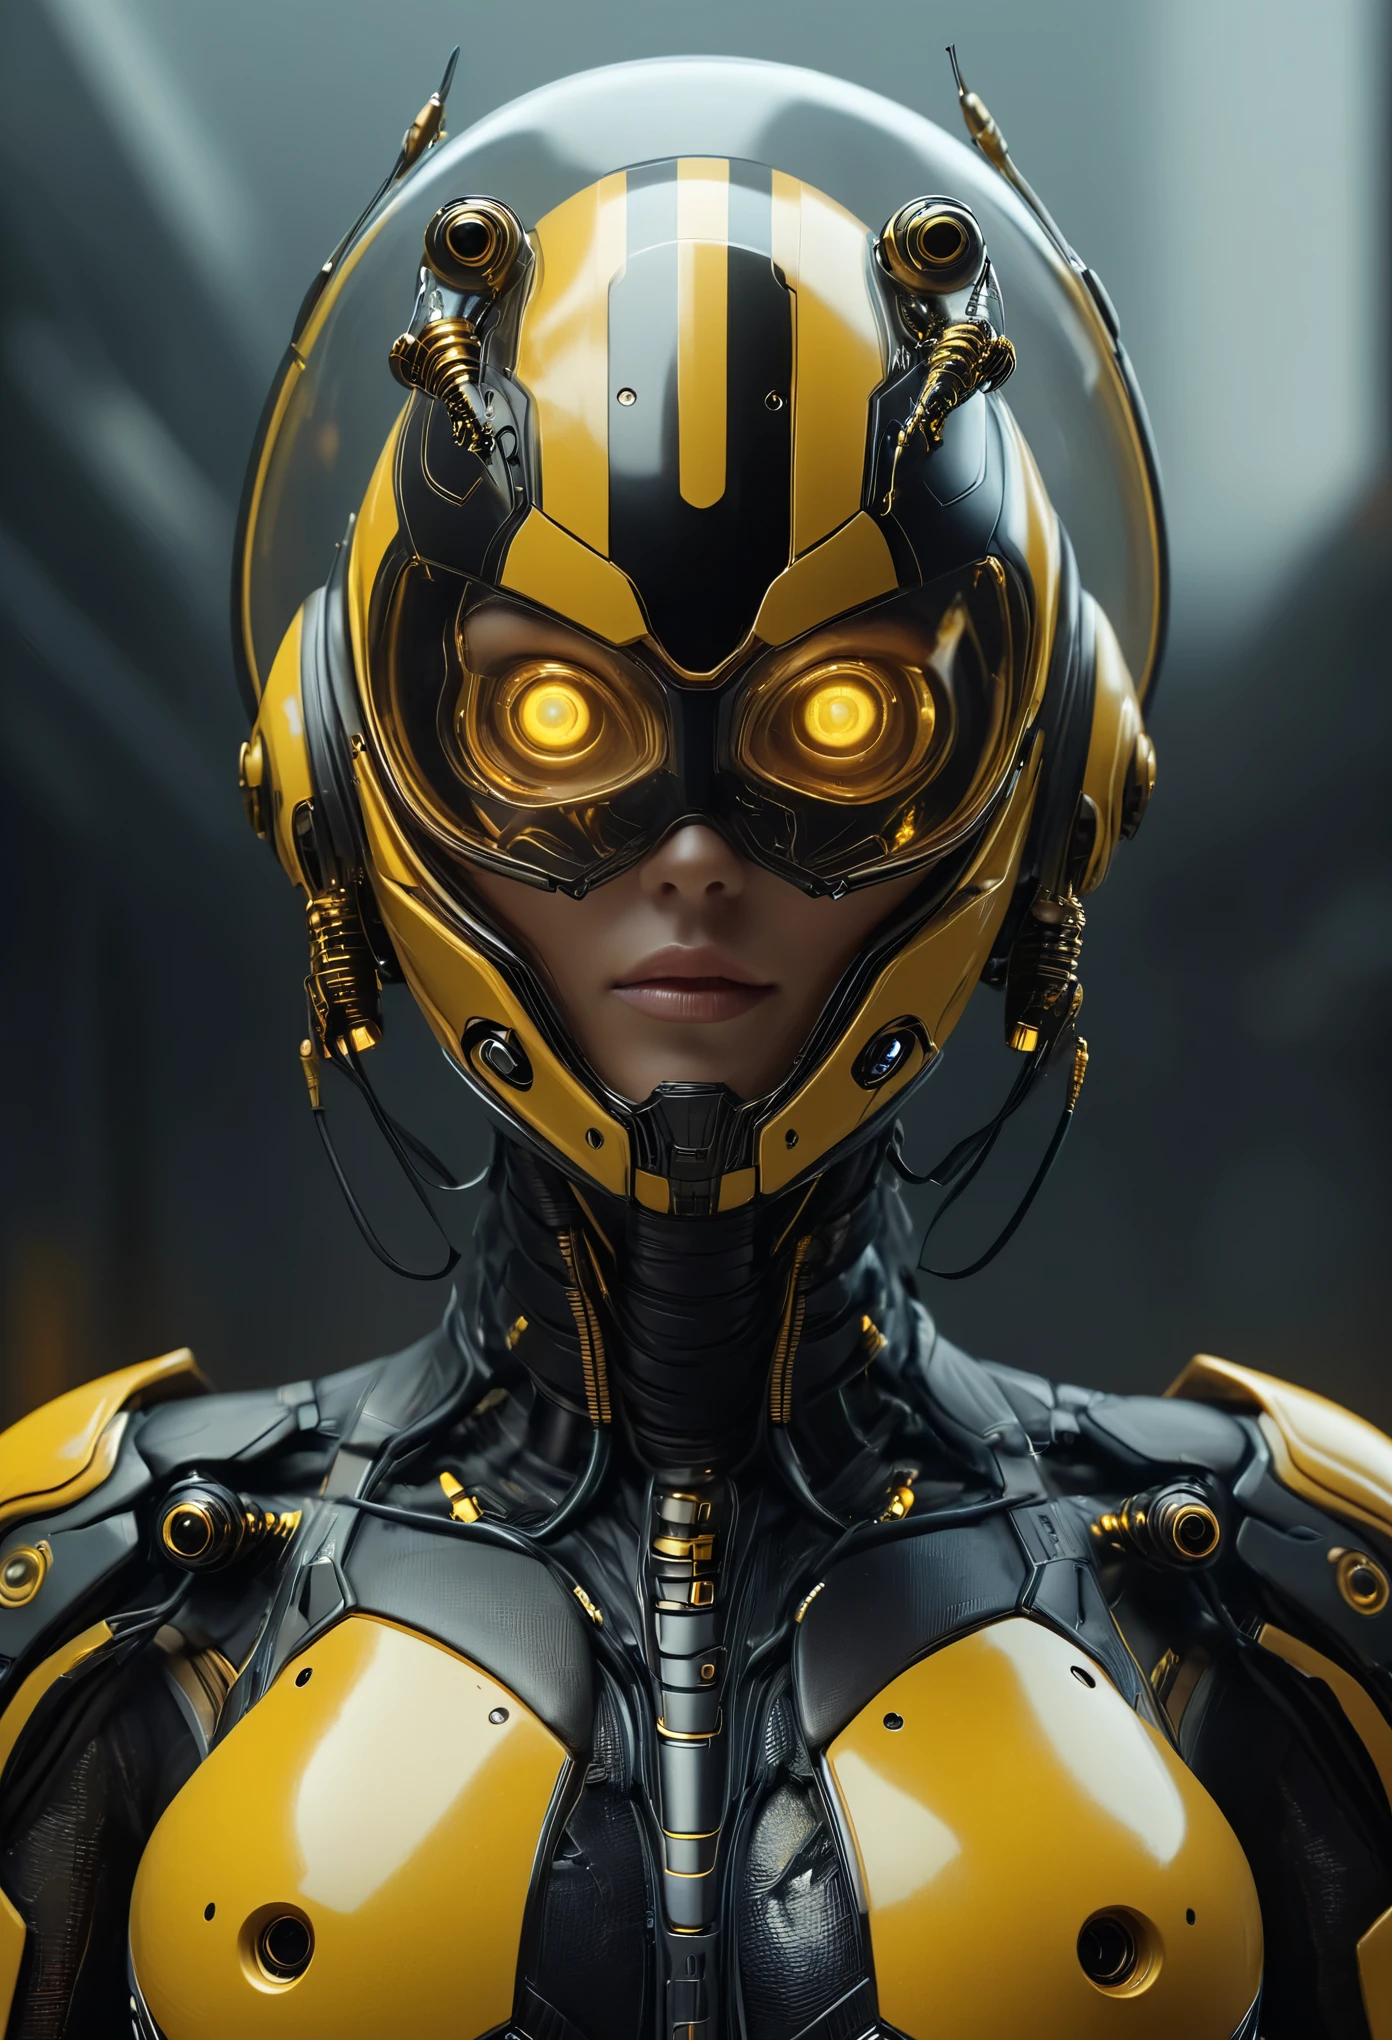 (最好的品質, 4k, 8K, 高畫質, 傑作:1.2), (超詳細, 實際的, 逼真的:1.37),一個可怕的女性戰鬥機器人與人類女性和黃蜂的結合, 形狀像黃蜂臉的全罩式安全帽, 像大黃蜂一樣採用黃色和黑色的配色方案, 巨大的複眼, 和未來科技. (全国性DFW:1.3)